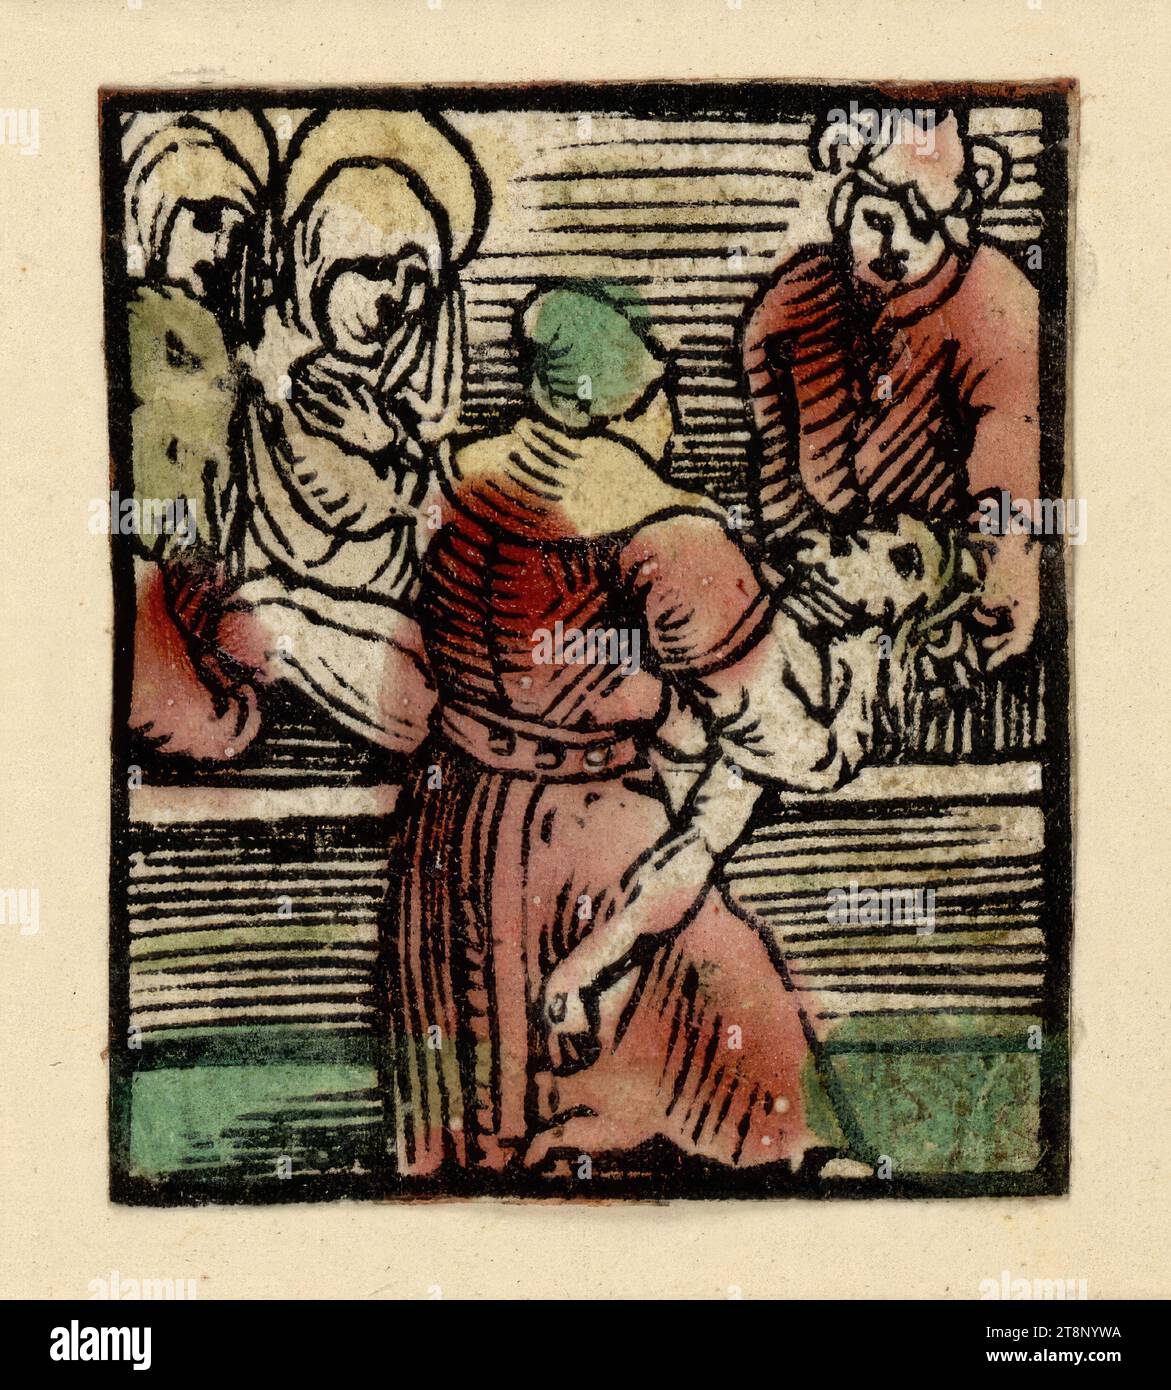 Entombment, Ulrich Pinder : le jardin décidé de rosenkrantz marie, Hans Baldung dit Grien (Schwäbisch Gmünd 1484/85 - 1545 Strasbourg), 1505, imprimé, gravure sur bois, coloré, feuille : 4,2 x 3,6 cm Banque D'Images